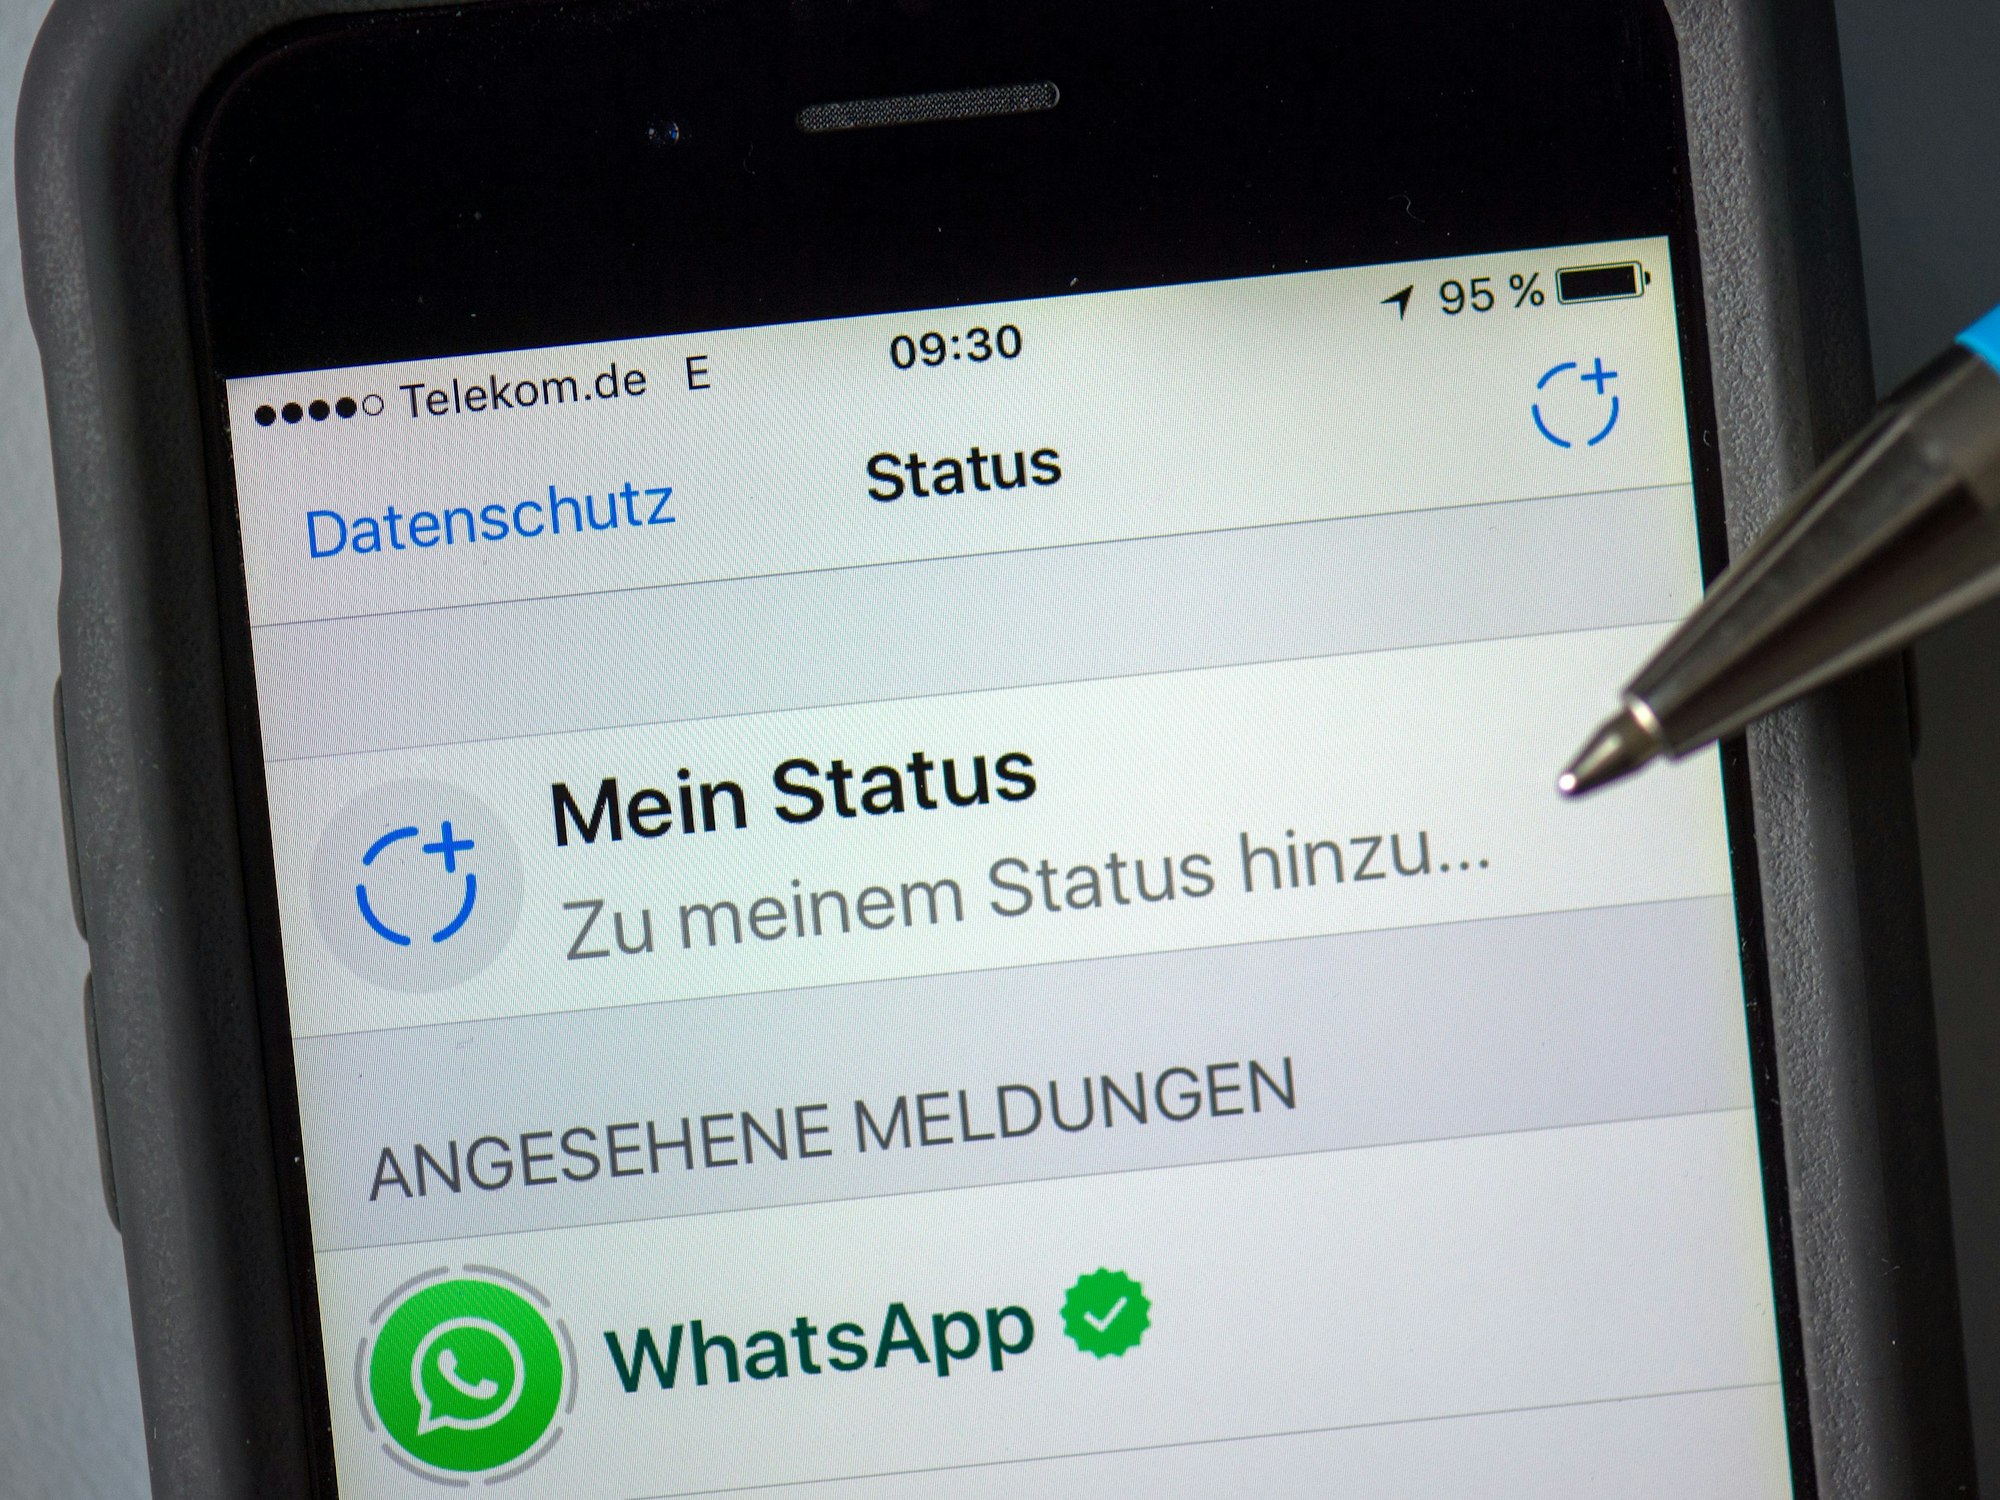 „Datenschutz - Status - Mein Status“ ist am 22. Februar 2017 auf dem Display eines iPhone in Dresden (Sachsen) zu lesen.